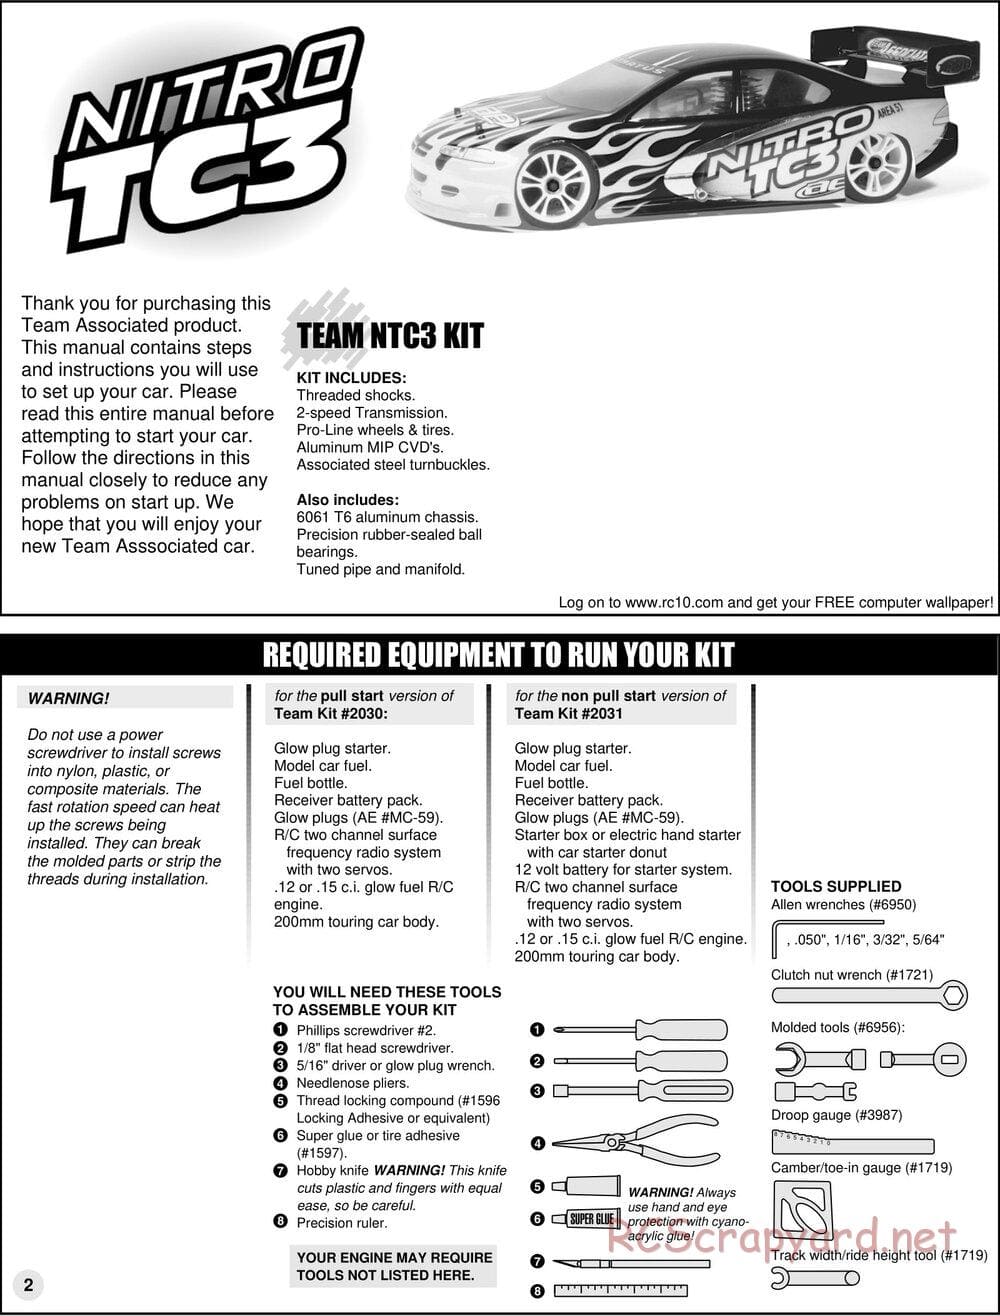 Team Associated - NTC3 Team - Manual - Page 1